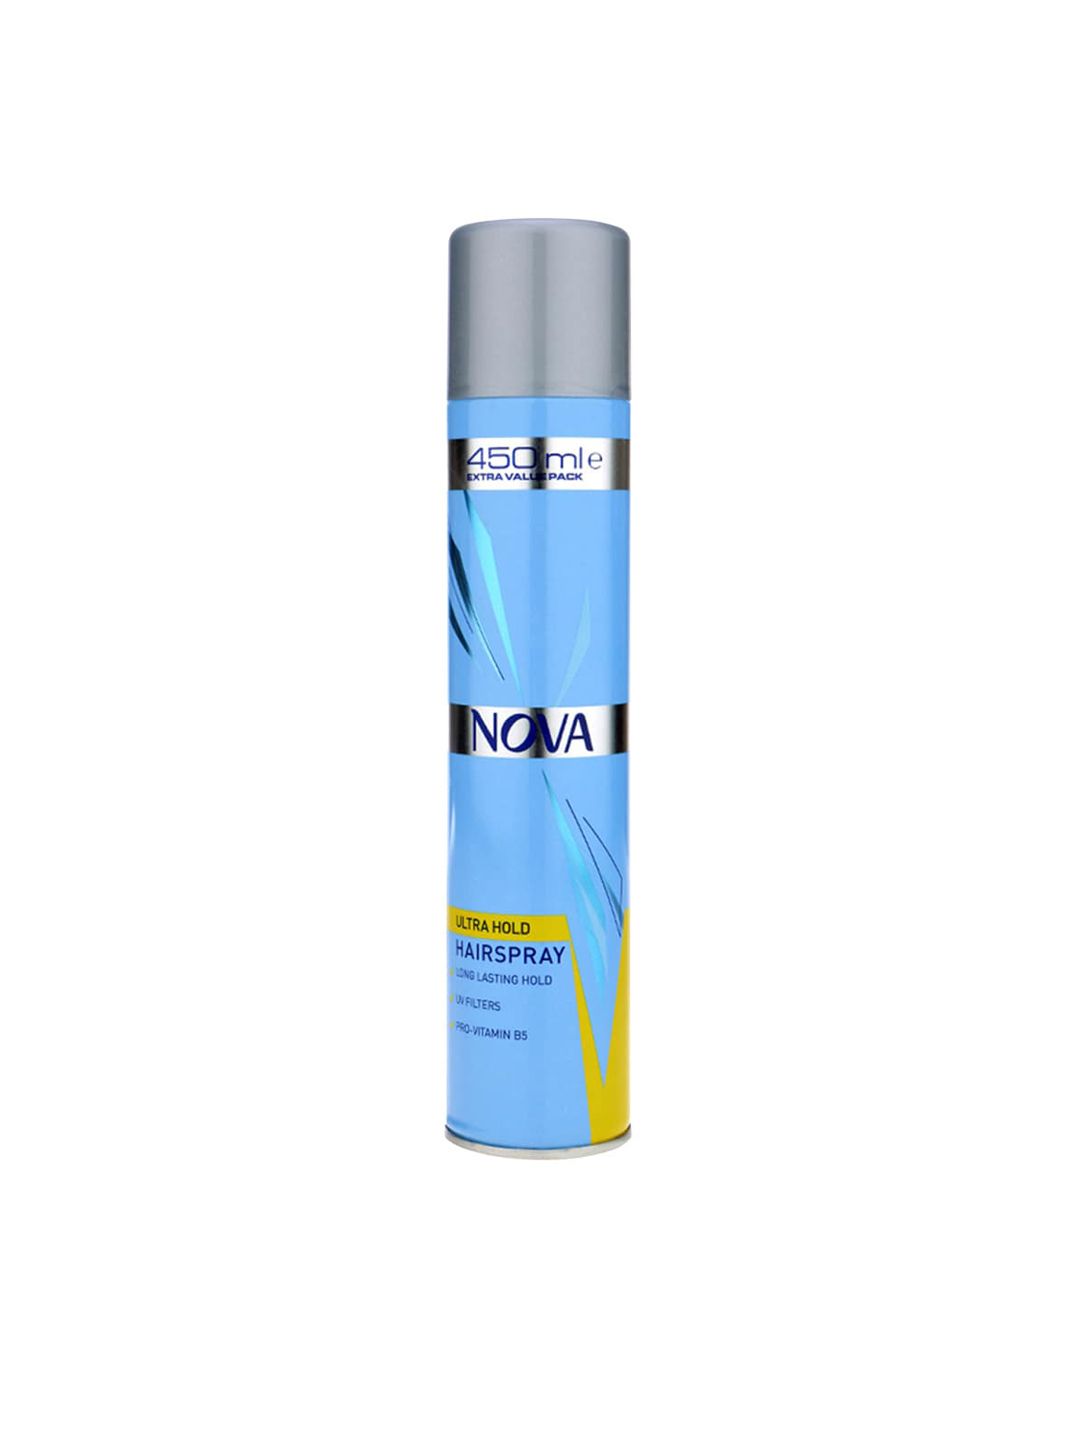 NOVA Ultra Hair Spray Blue, 450ml Price in India